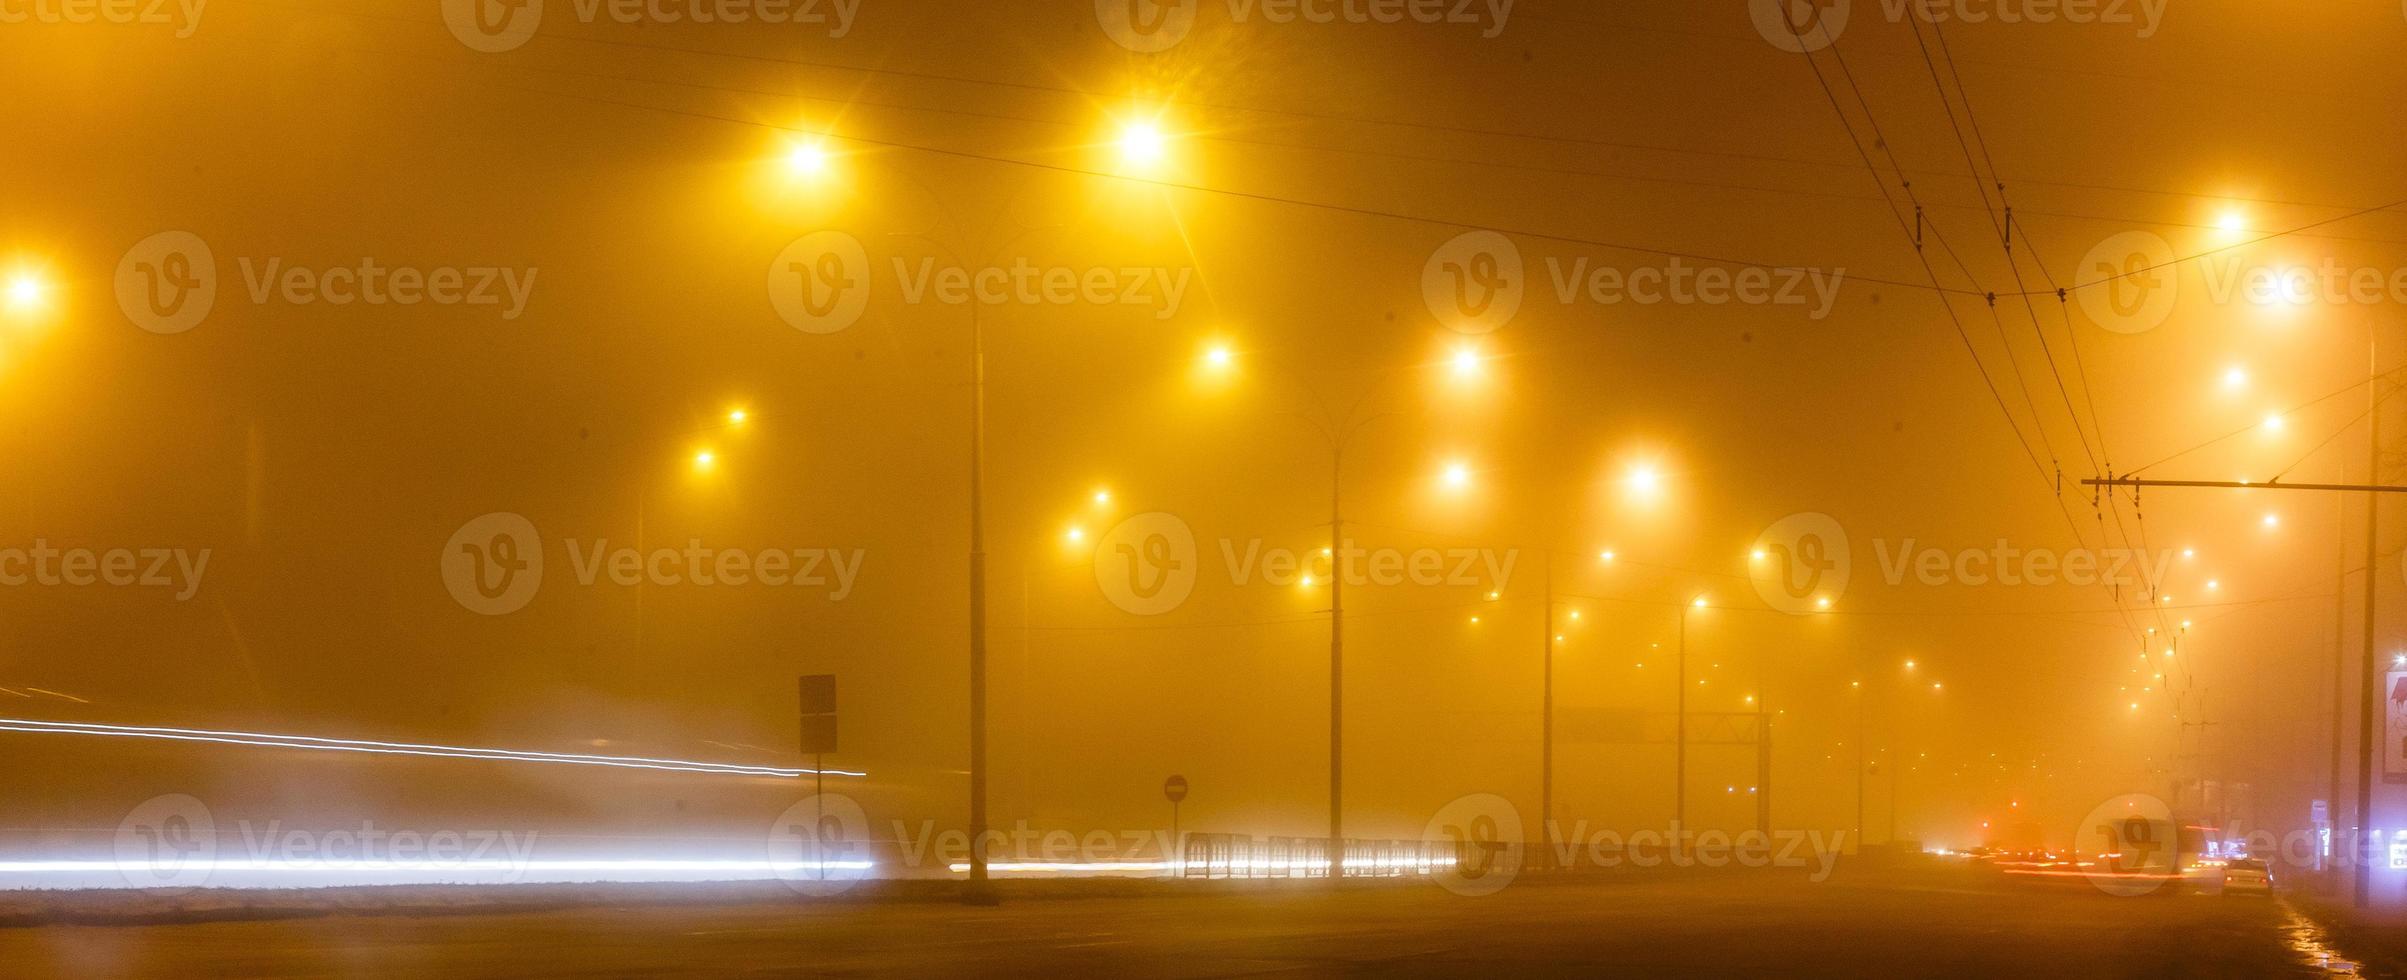 stad nacht lichten weg brug met de lichten en in beweging auto in de mist na regen visie van foto